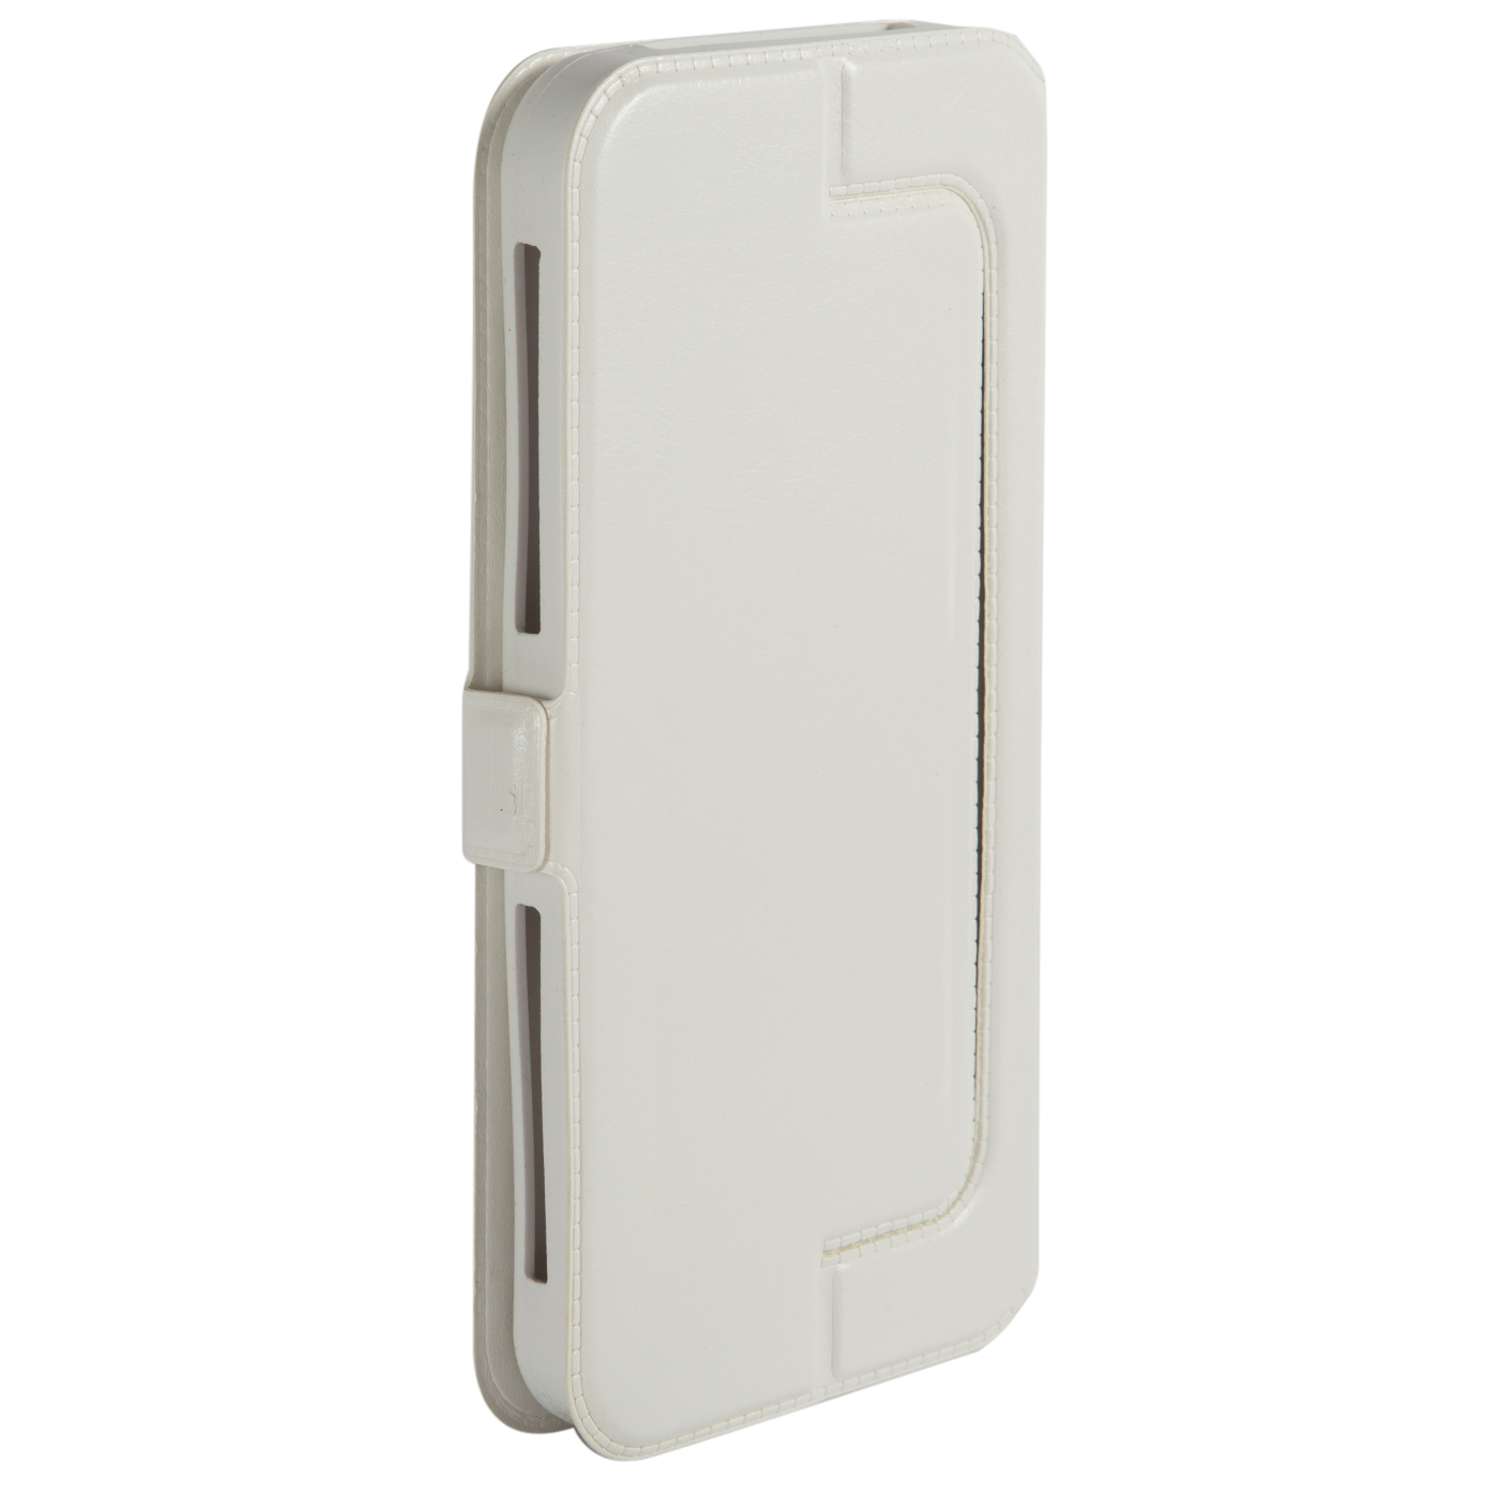 Чехол универсальный iBox Universal Slide для телефонов 5-6 дюймов белый - фото 4